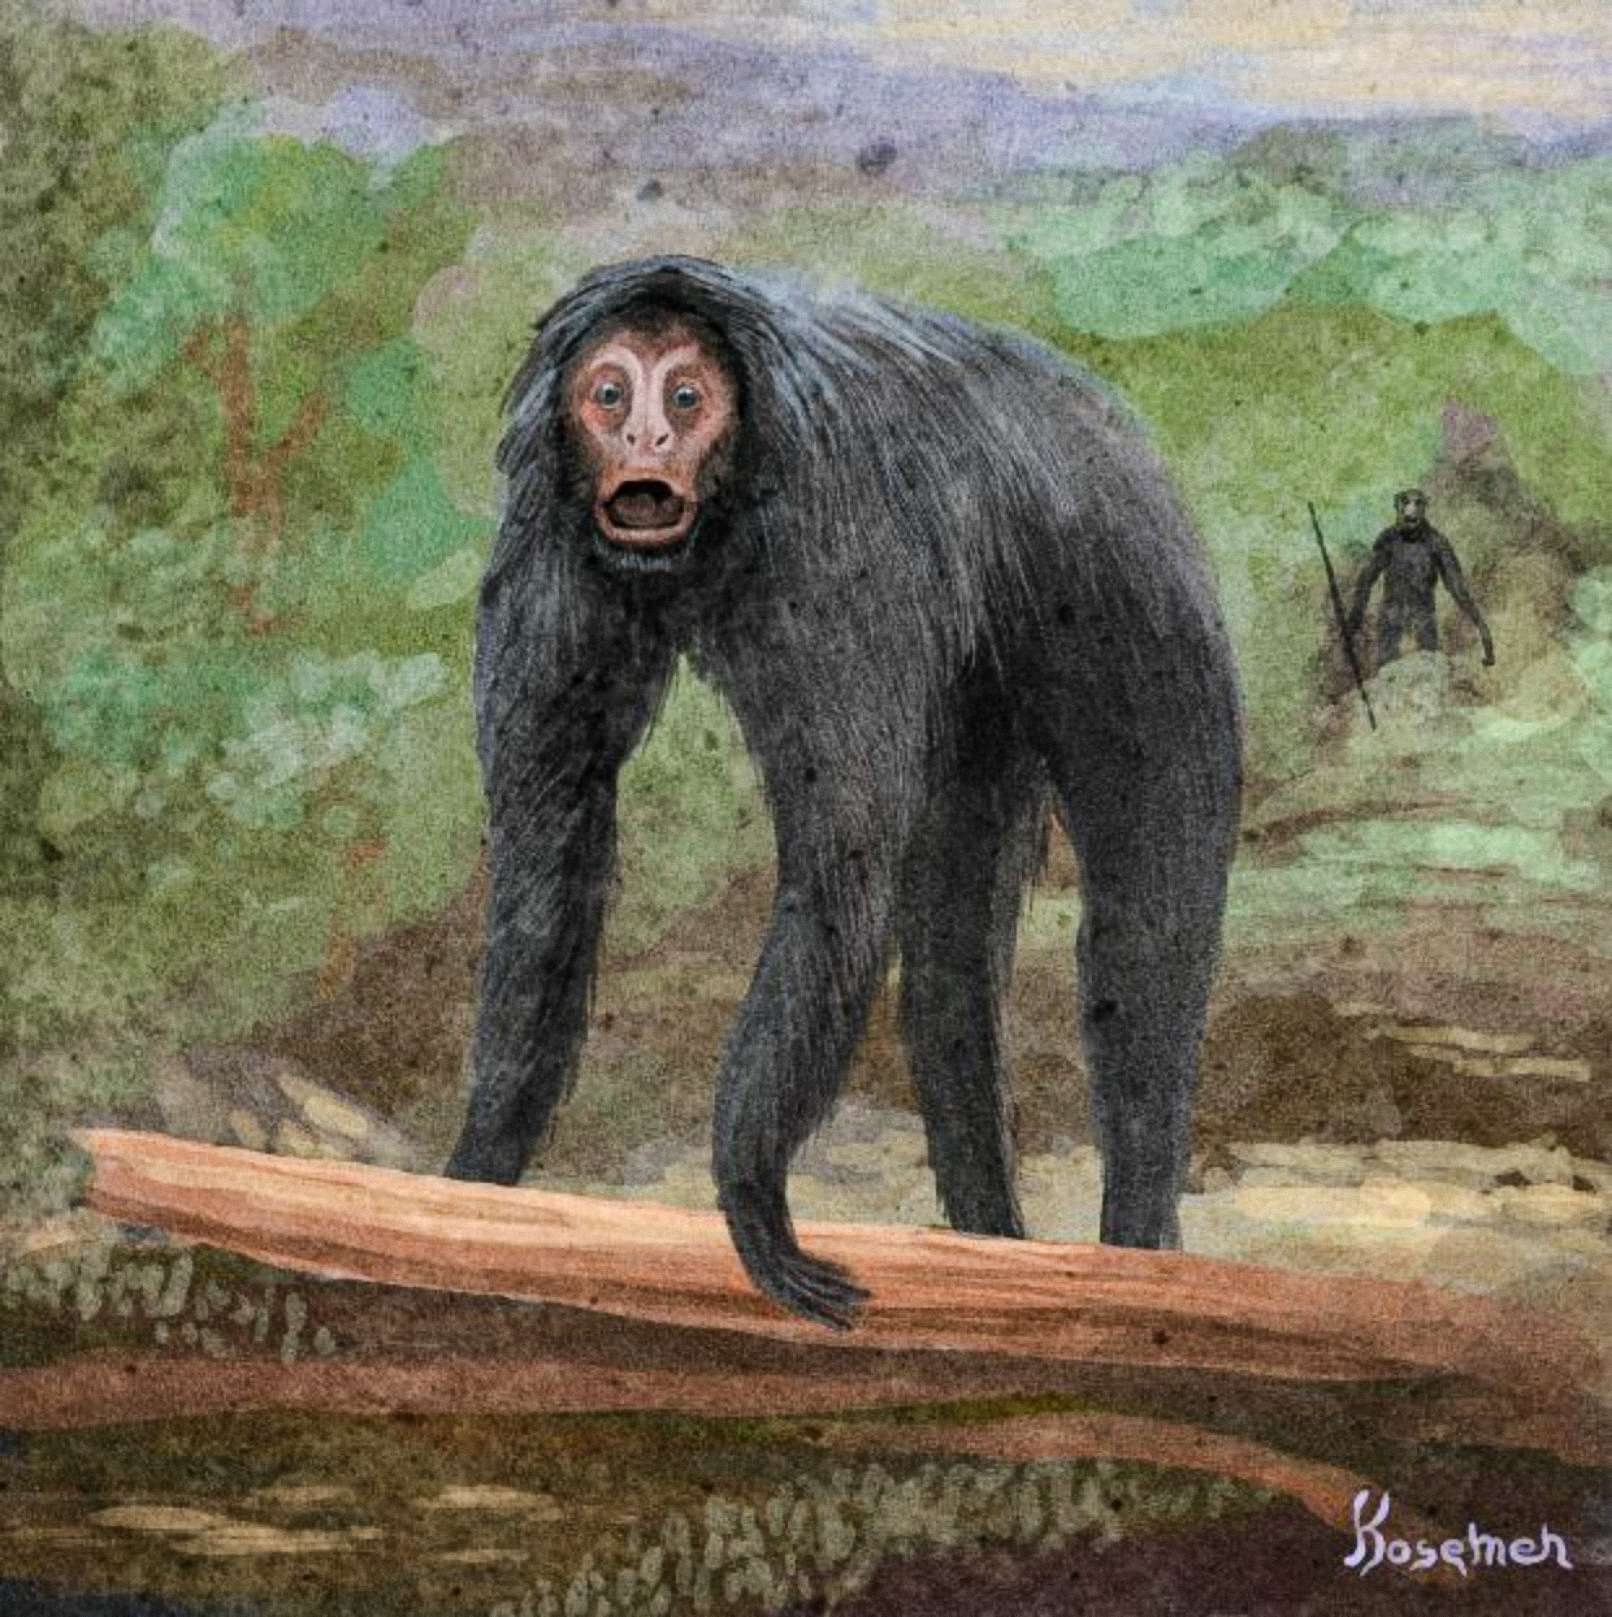 Une interprétation spéculative de l'événement, l'autre primate représenté à l'arrière tenant un outil (art de Kosemen)